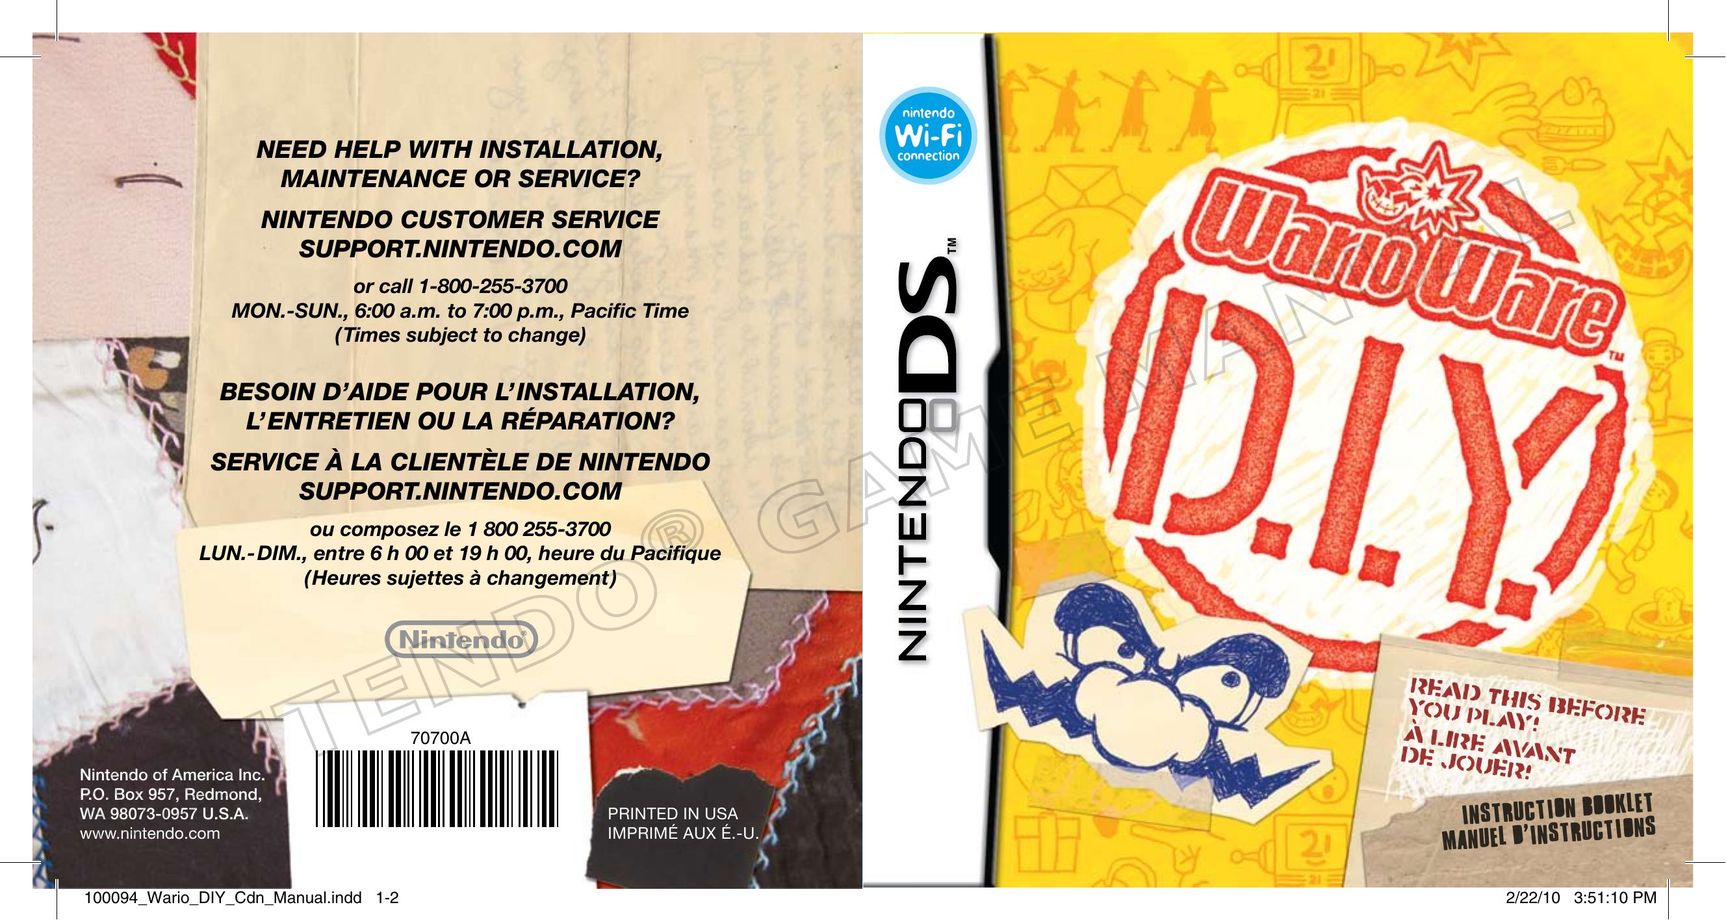 Nintendo Wario Ware D.I.Y. Video Games User Manual